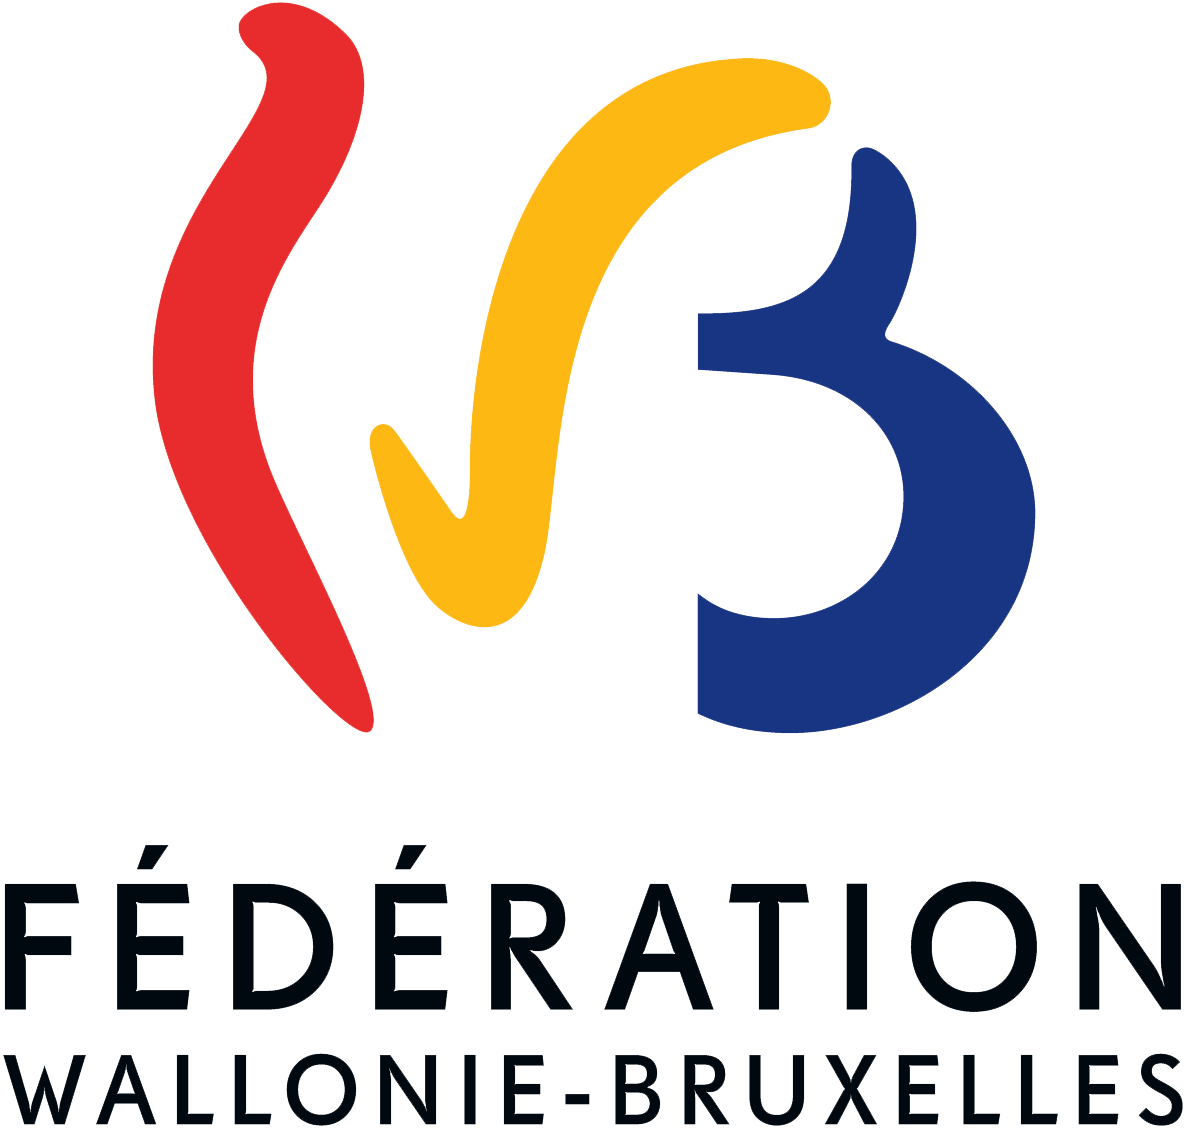 Fédération Walonie Bruxelles